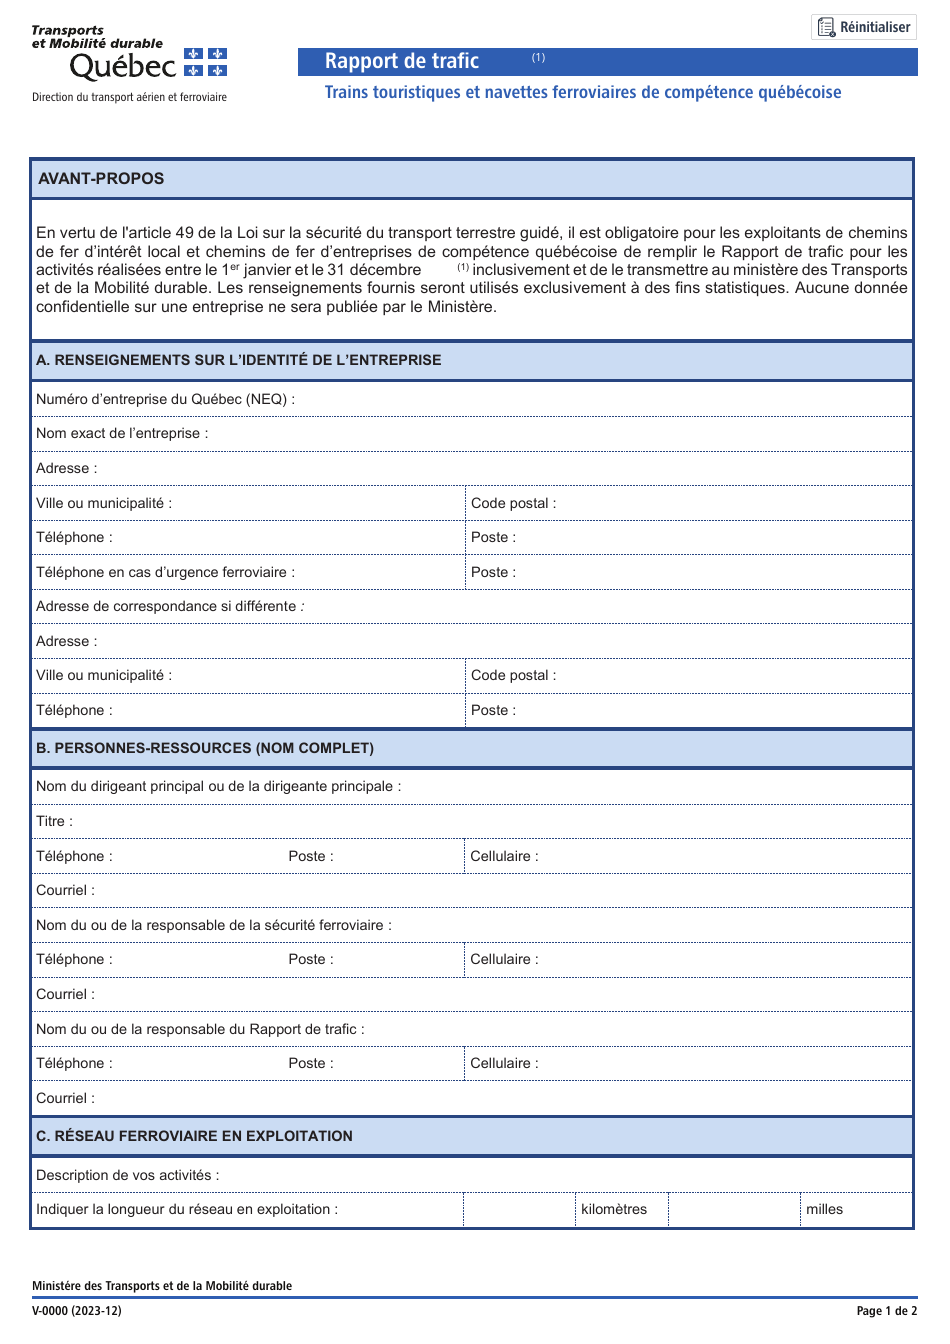 Forme V-0000 Rapport De Trafic - Trains Touristiques Et Navettes Ferroviaires De Competence Quebecoise - Quebec, Canada (French), Page 1